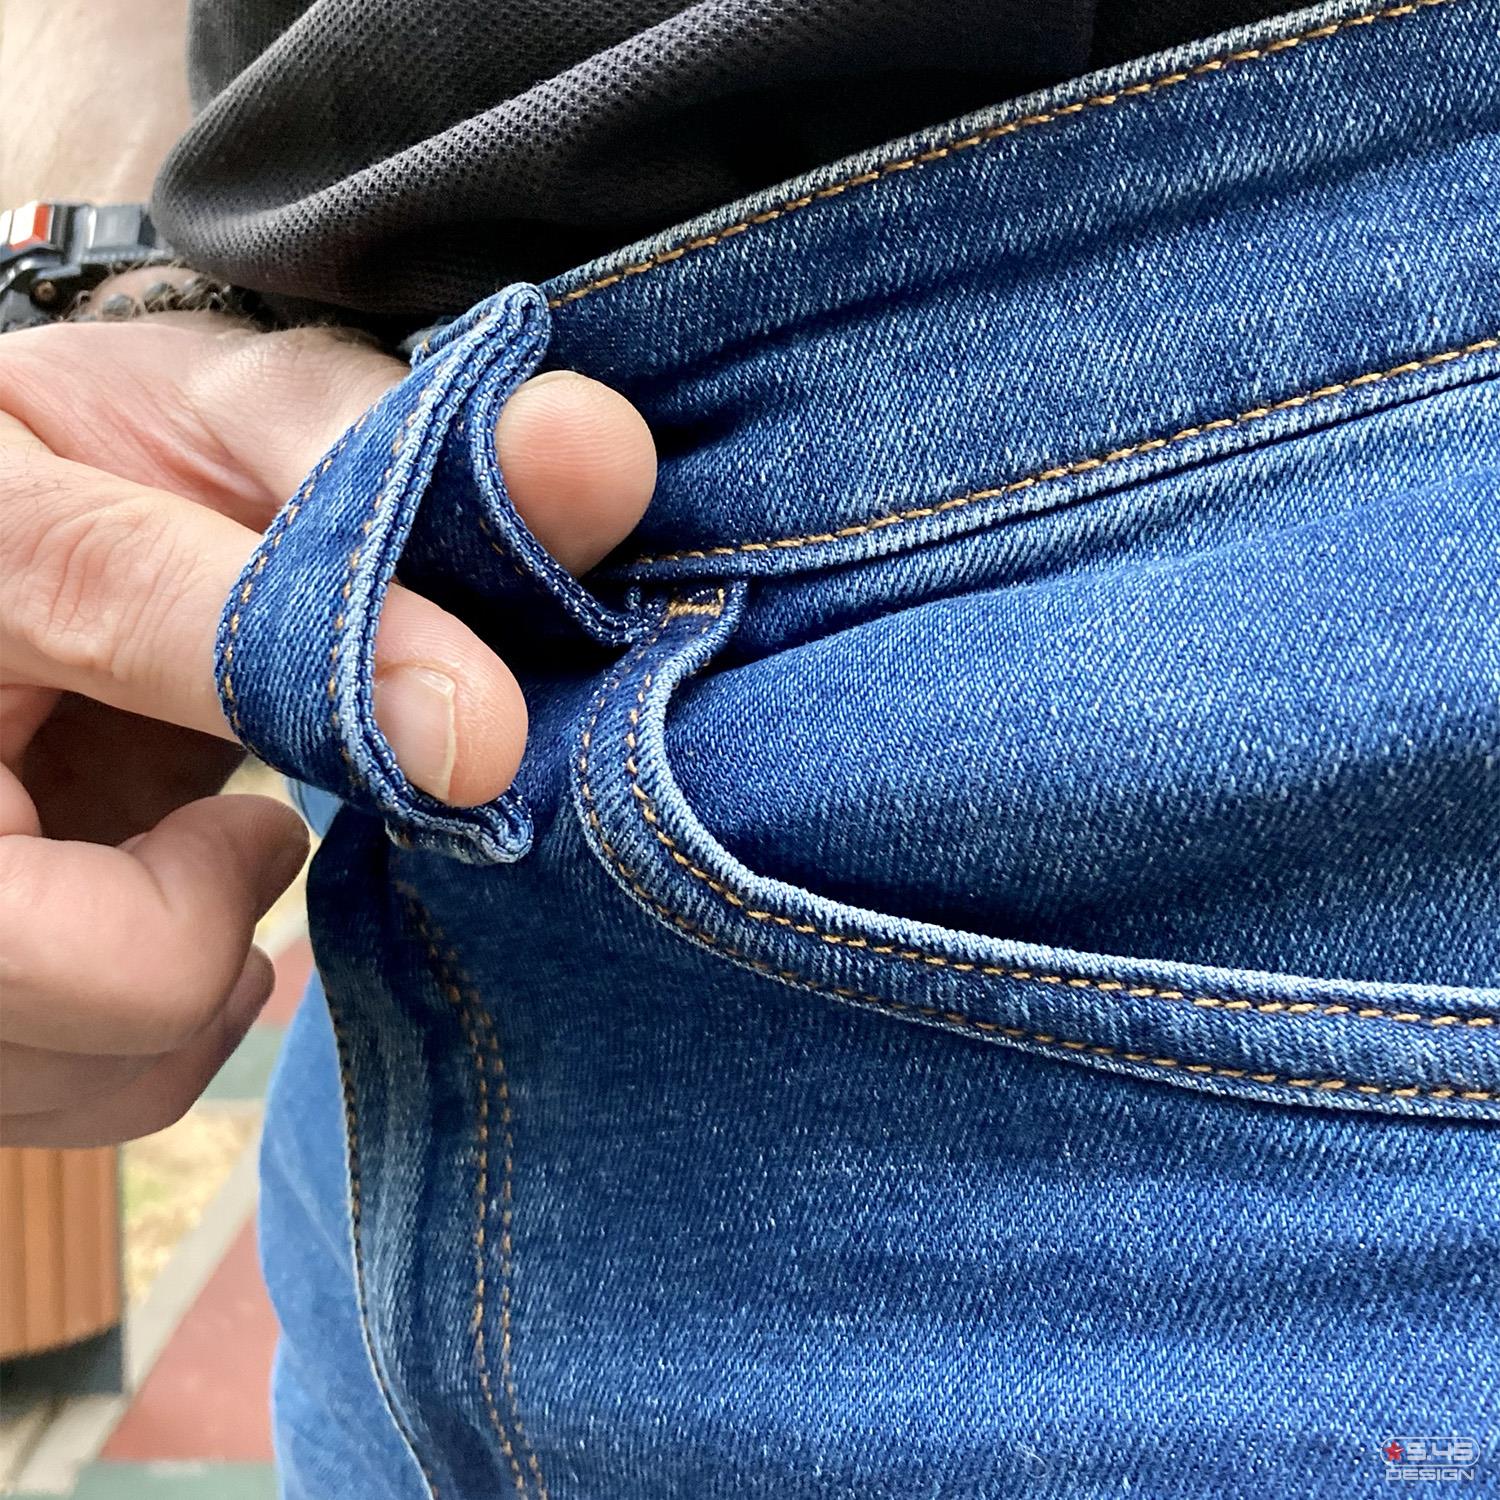 Пояс джинсов оборудован шестью шлёвками, конструкция которых рассчитана на два стандарта ширины ремня